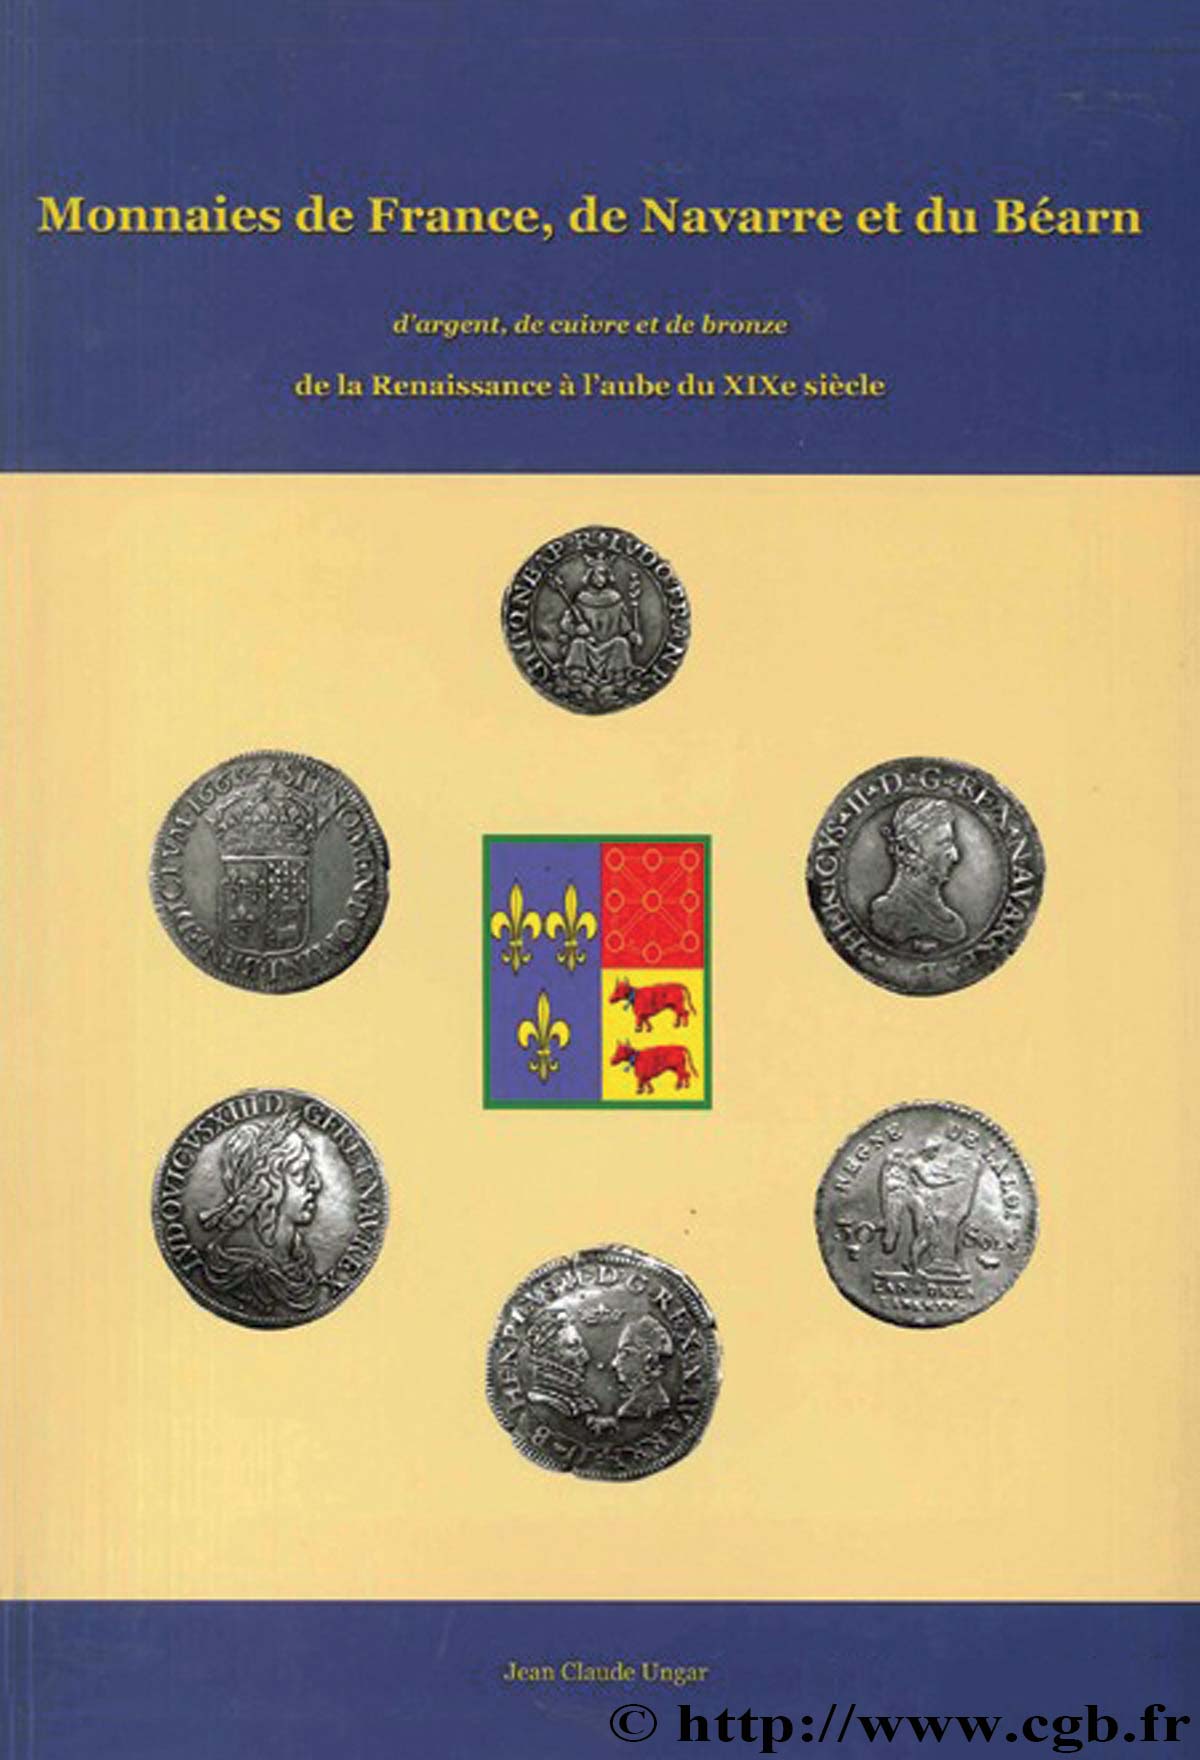 Monnaies de France, de Navarre et du Béarn d argent, de cuivre et de bronze de la Renaissance à l aube du XIXe siècle UNGAR Jean-Claude